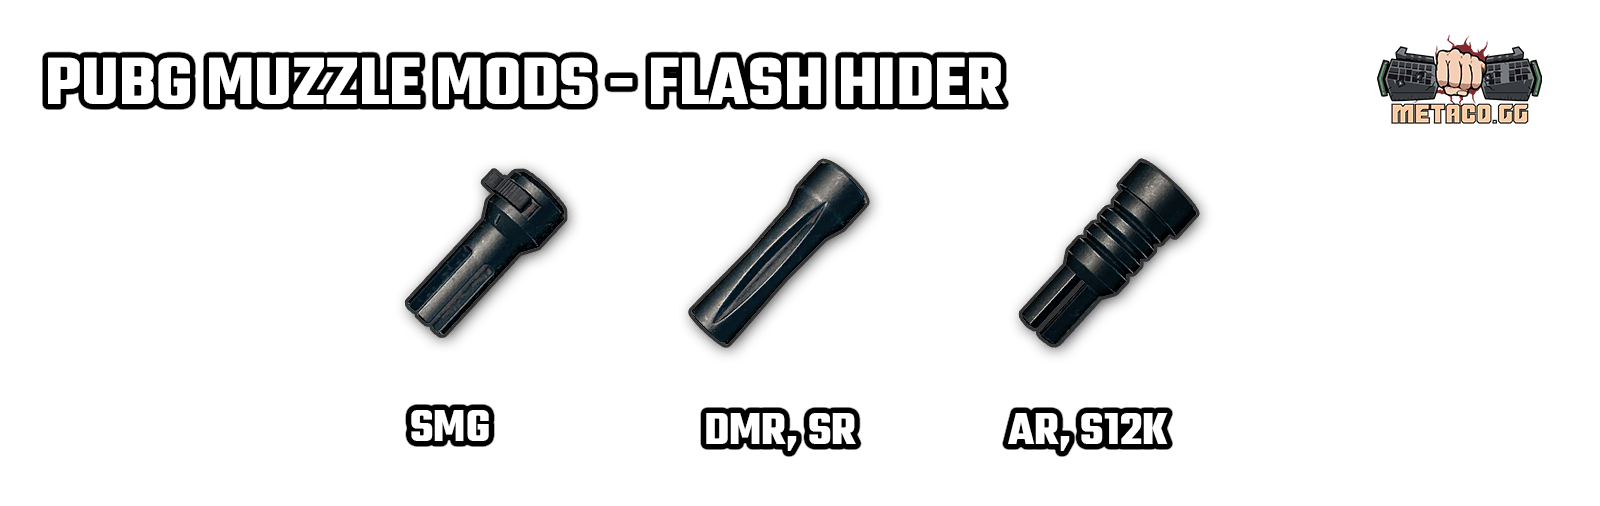 panduan-muzzle-mods-pubg-featured flash hider